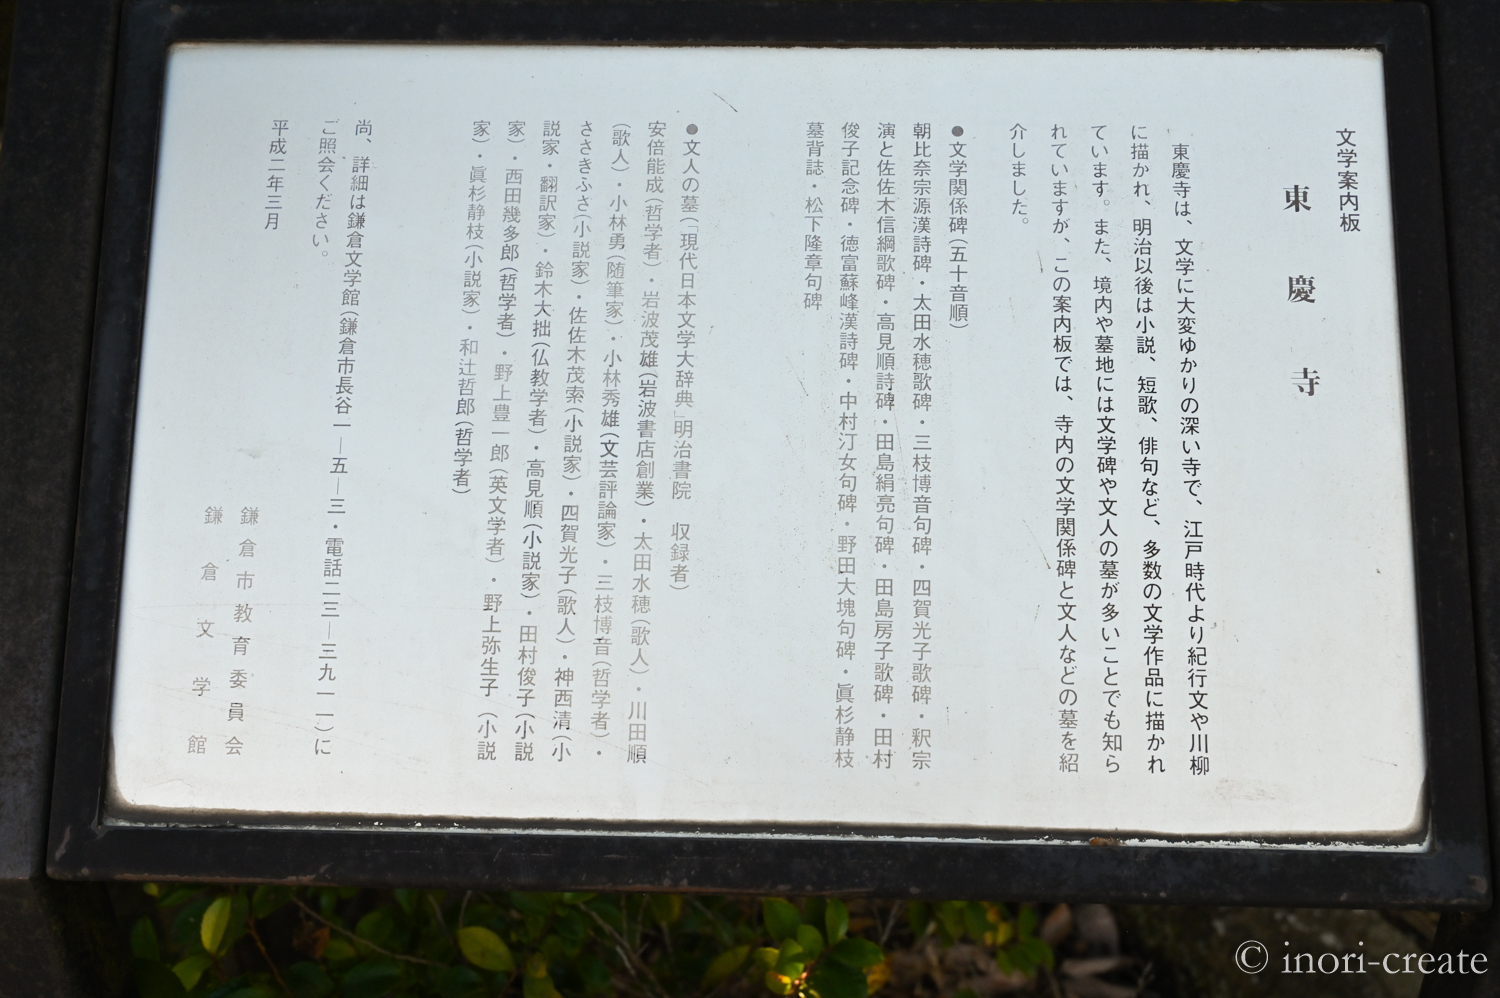 鎌倉東慶寺にお墓のある文人達の名前。明治以降は鈴木大拙などの学者や、小林秀雄や野上弥生子といった文人が眠るお墓として有名です。